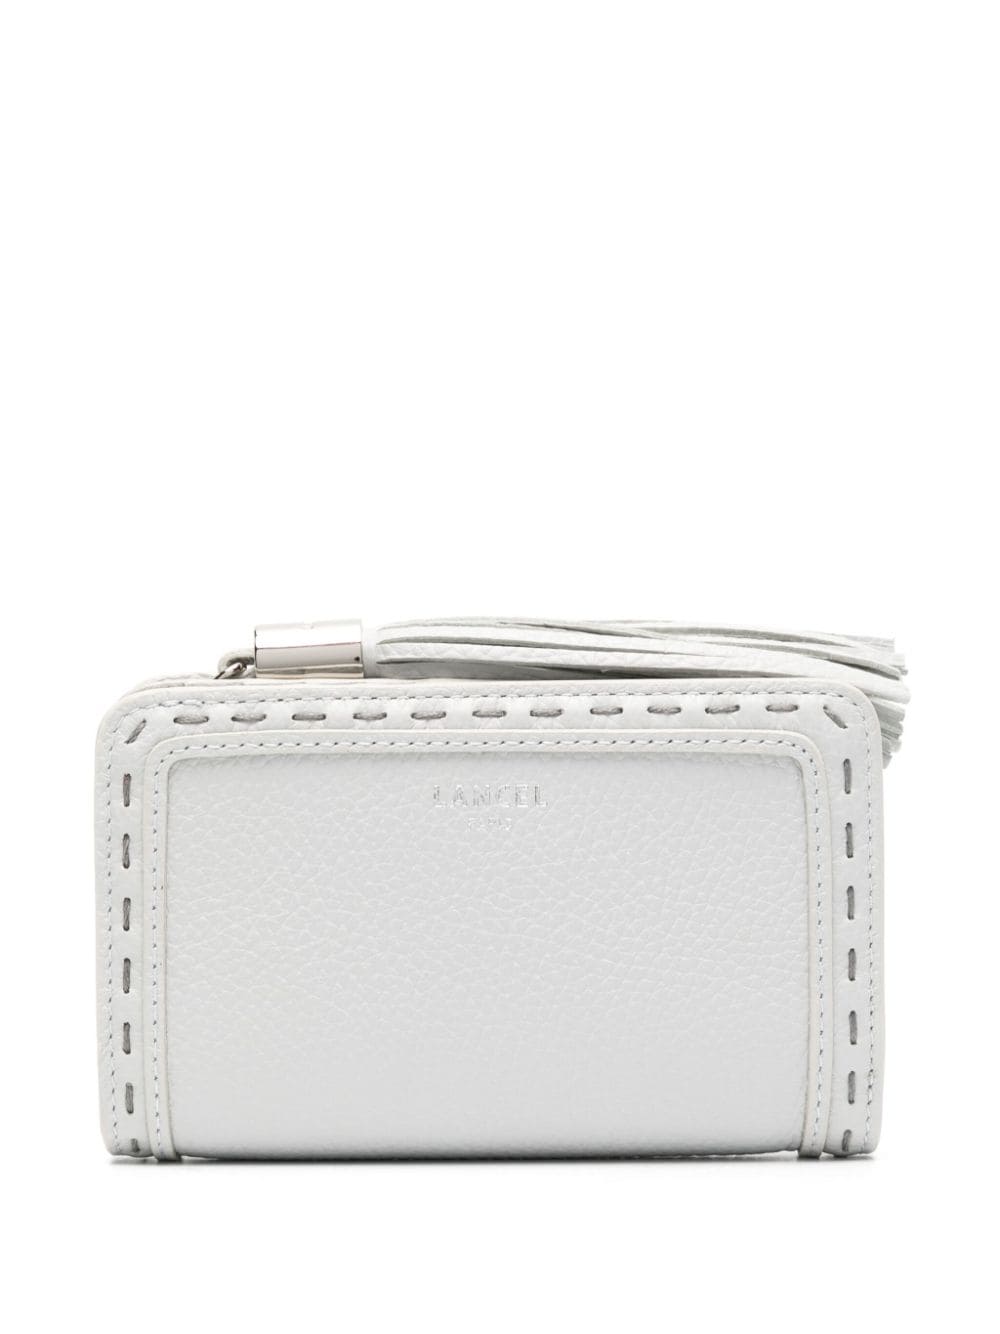 Lancel Premier Flirt leather wallet - White von Lancel